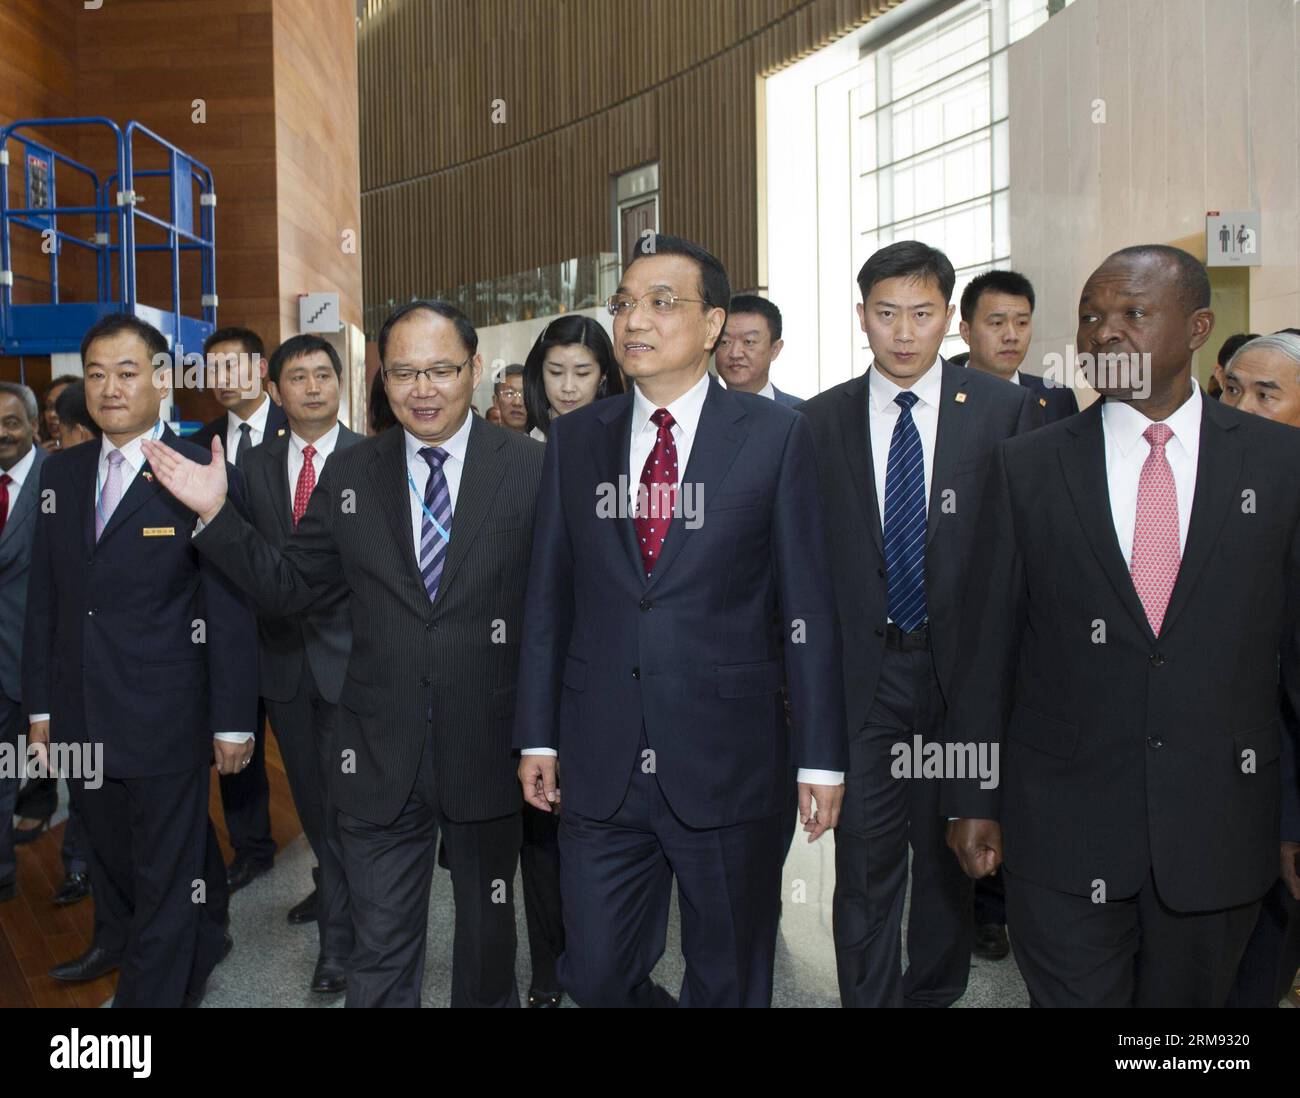 (140505) -- ADDIS ABEBA, 5. Mai 2014 (Xinhua) -- der chinesische Ministerpräsident Li Keqiang (C) besucht das Konferenzzentrum der Afrikanischen Union (AU) in Addis Abeba, Äthiopien, am 5. Mai 2014. Das AU Conference Center, dessen Bau von der chinesischen Regierung unterstützt wird, wurde hier am 28. Januar 2012 eingeweiht. (Xinhua/Wang YE) (yxb) ÄTHIOPIEN-CHINA-LI KEQIANG-AU KONFERENZZENTRUM-BESUCH PUBLICATIONxNOTxINxCHN Addis Abeba 5. Mai 2014 XINHUA chinesischer Ministerpräsident links Keqiang C besucht Au Konferenzzentrum der Afrikanischen Union in Addis Abeba Äthiopien 5. Mai 2014 das Au Konferenzzentrum, dessen Bau Sponsore IST Stockfoto